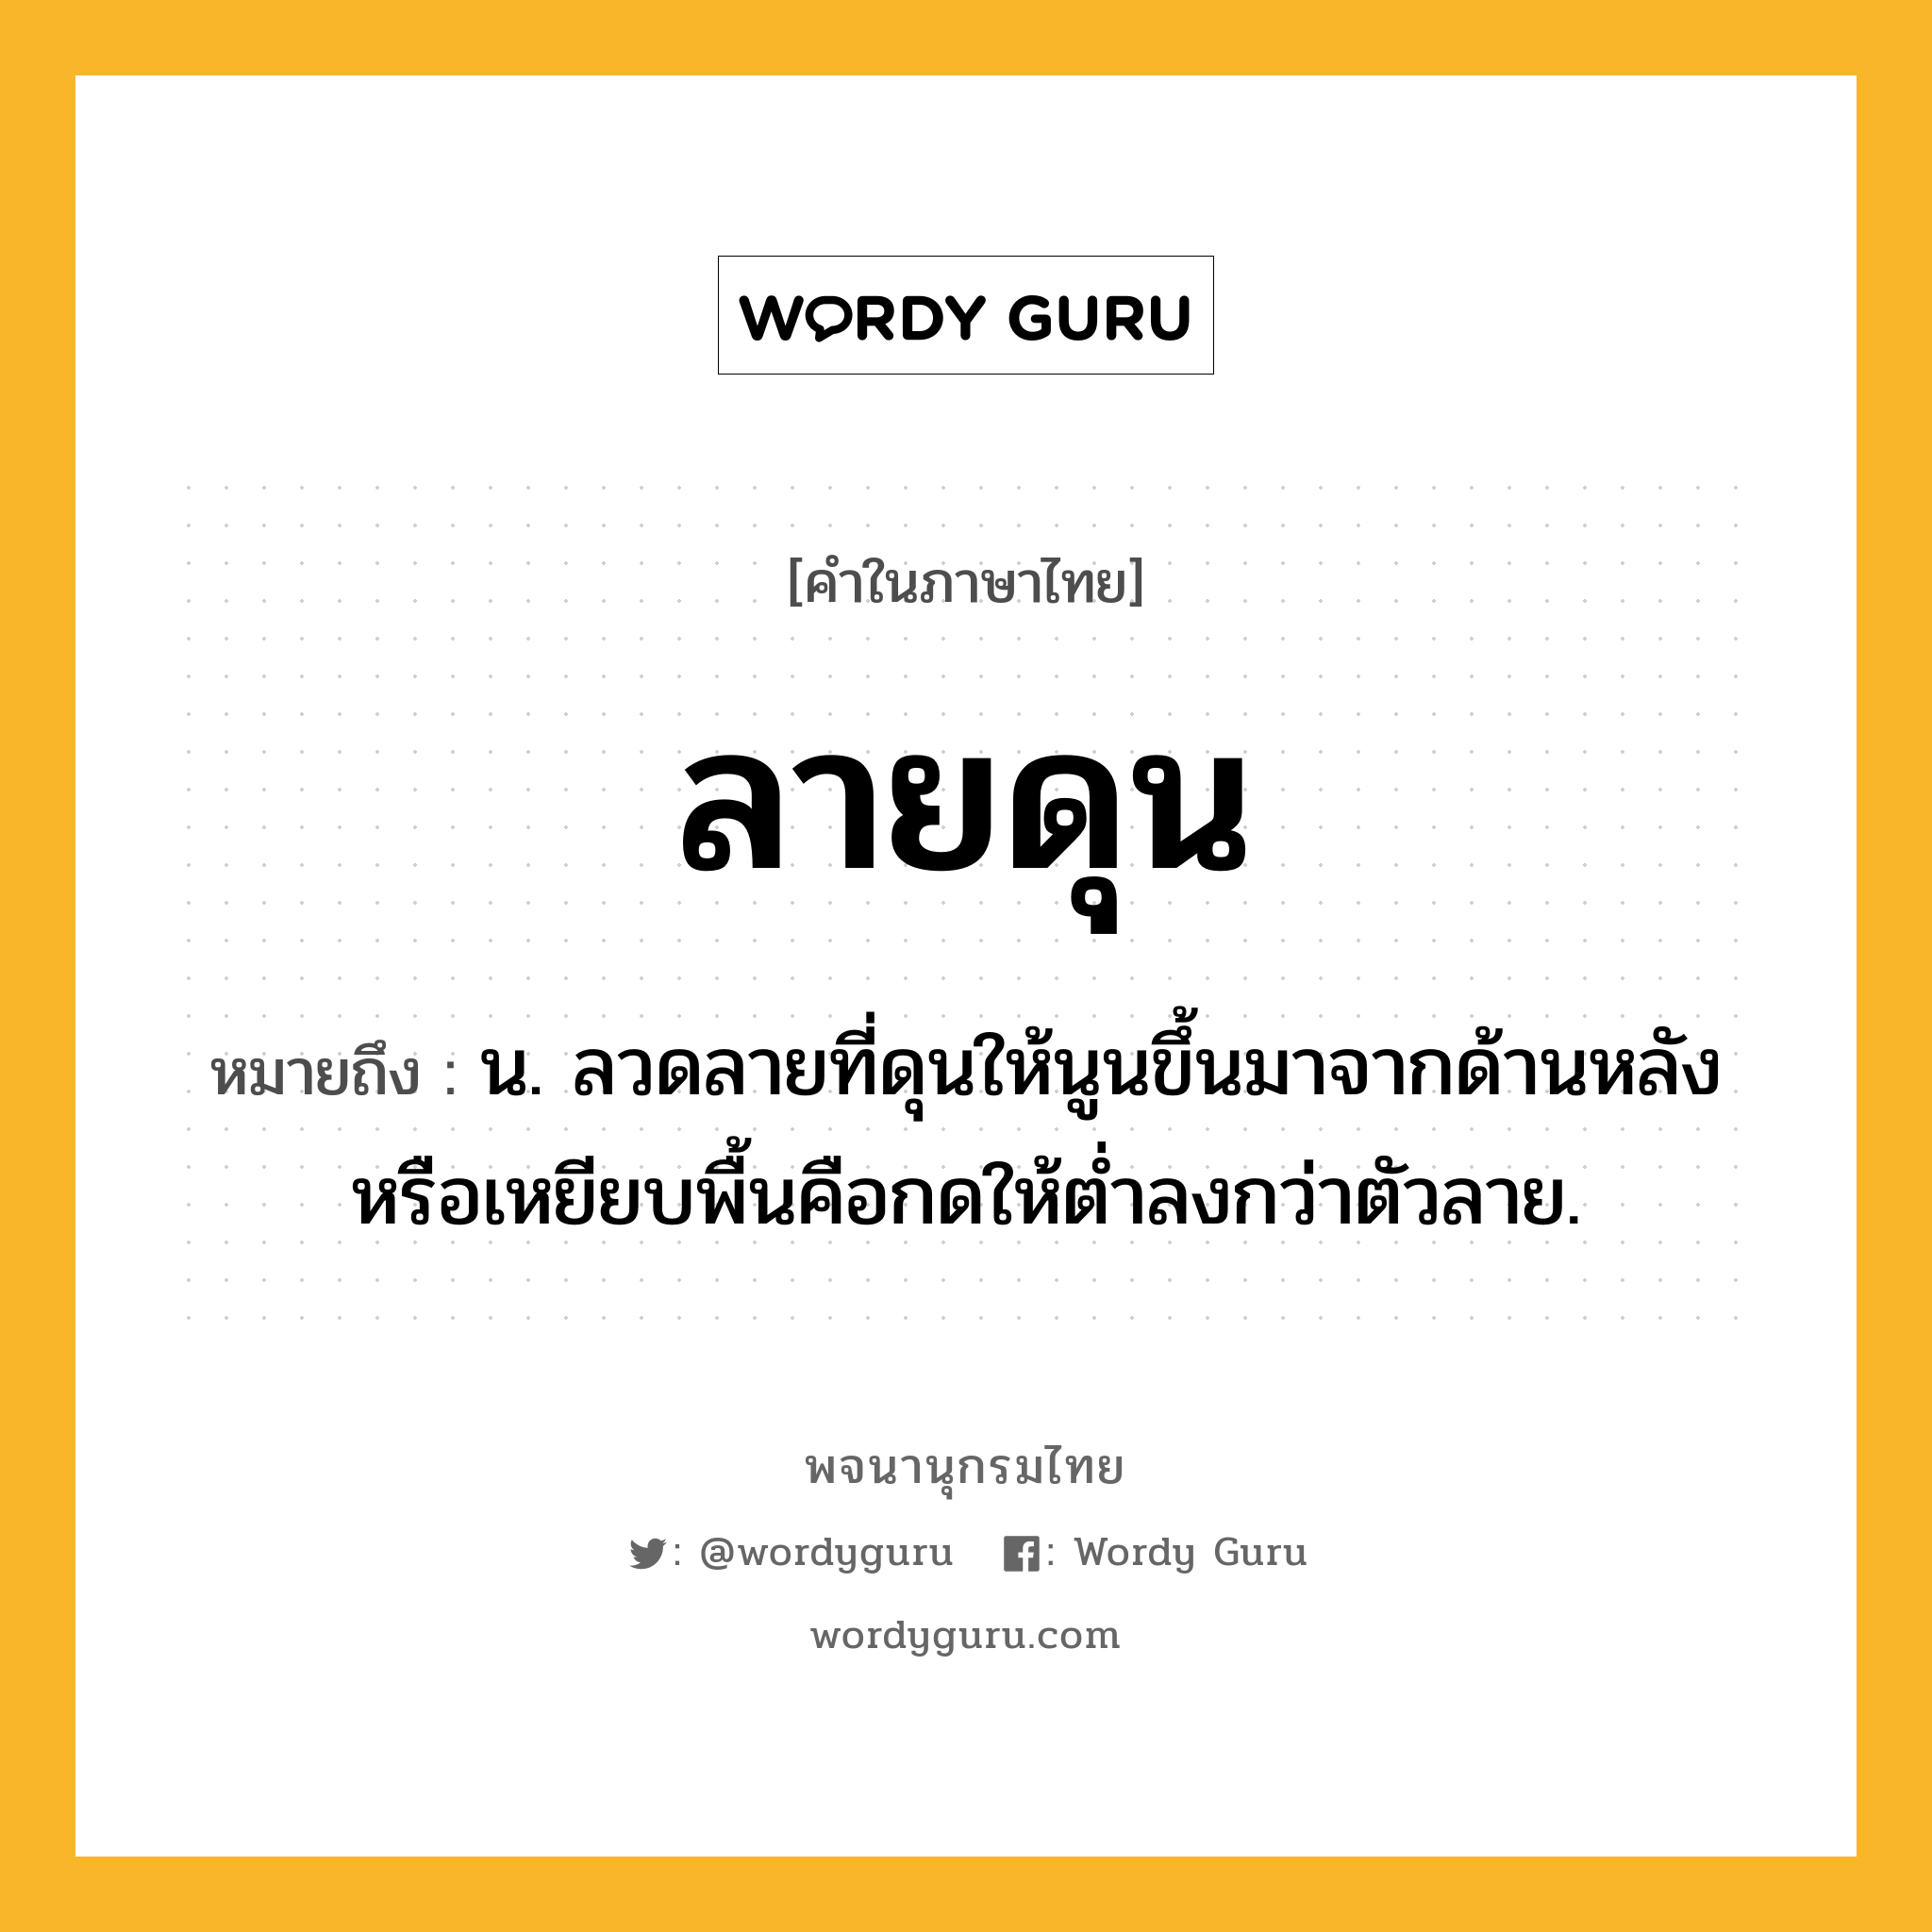 ลายดุน ความหมาย หมายถึงอะไร?, คำในภาษาไทย ลายดุน หมายถึง น. ลวดลายที่ดุนให้นูนขึ้นมาจากด้านหลังหรือเหยียบพื้นคือกดให้ต่ำลงกว่าตัวลาย.